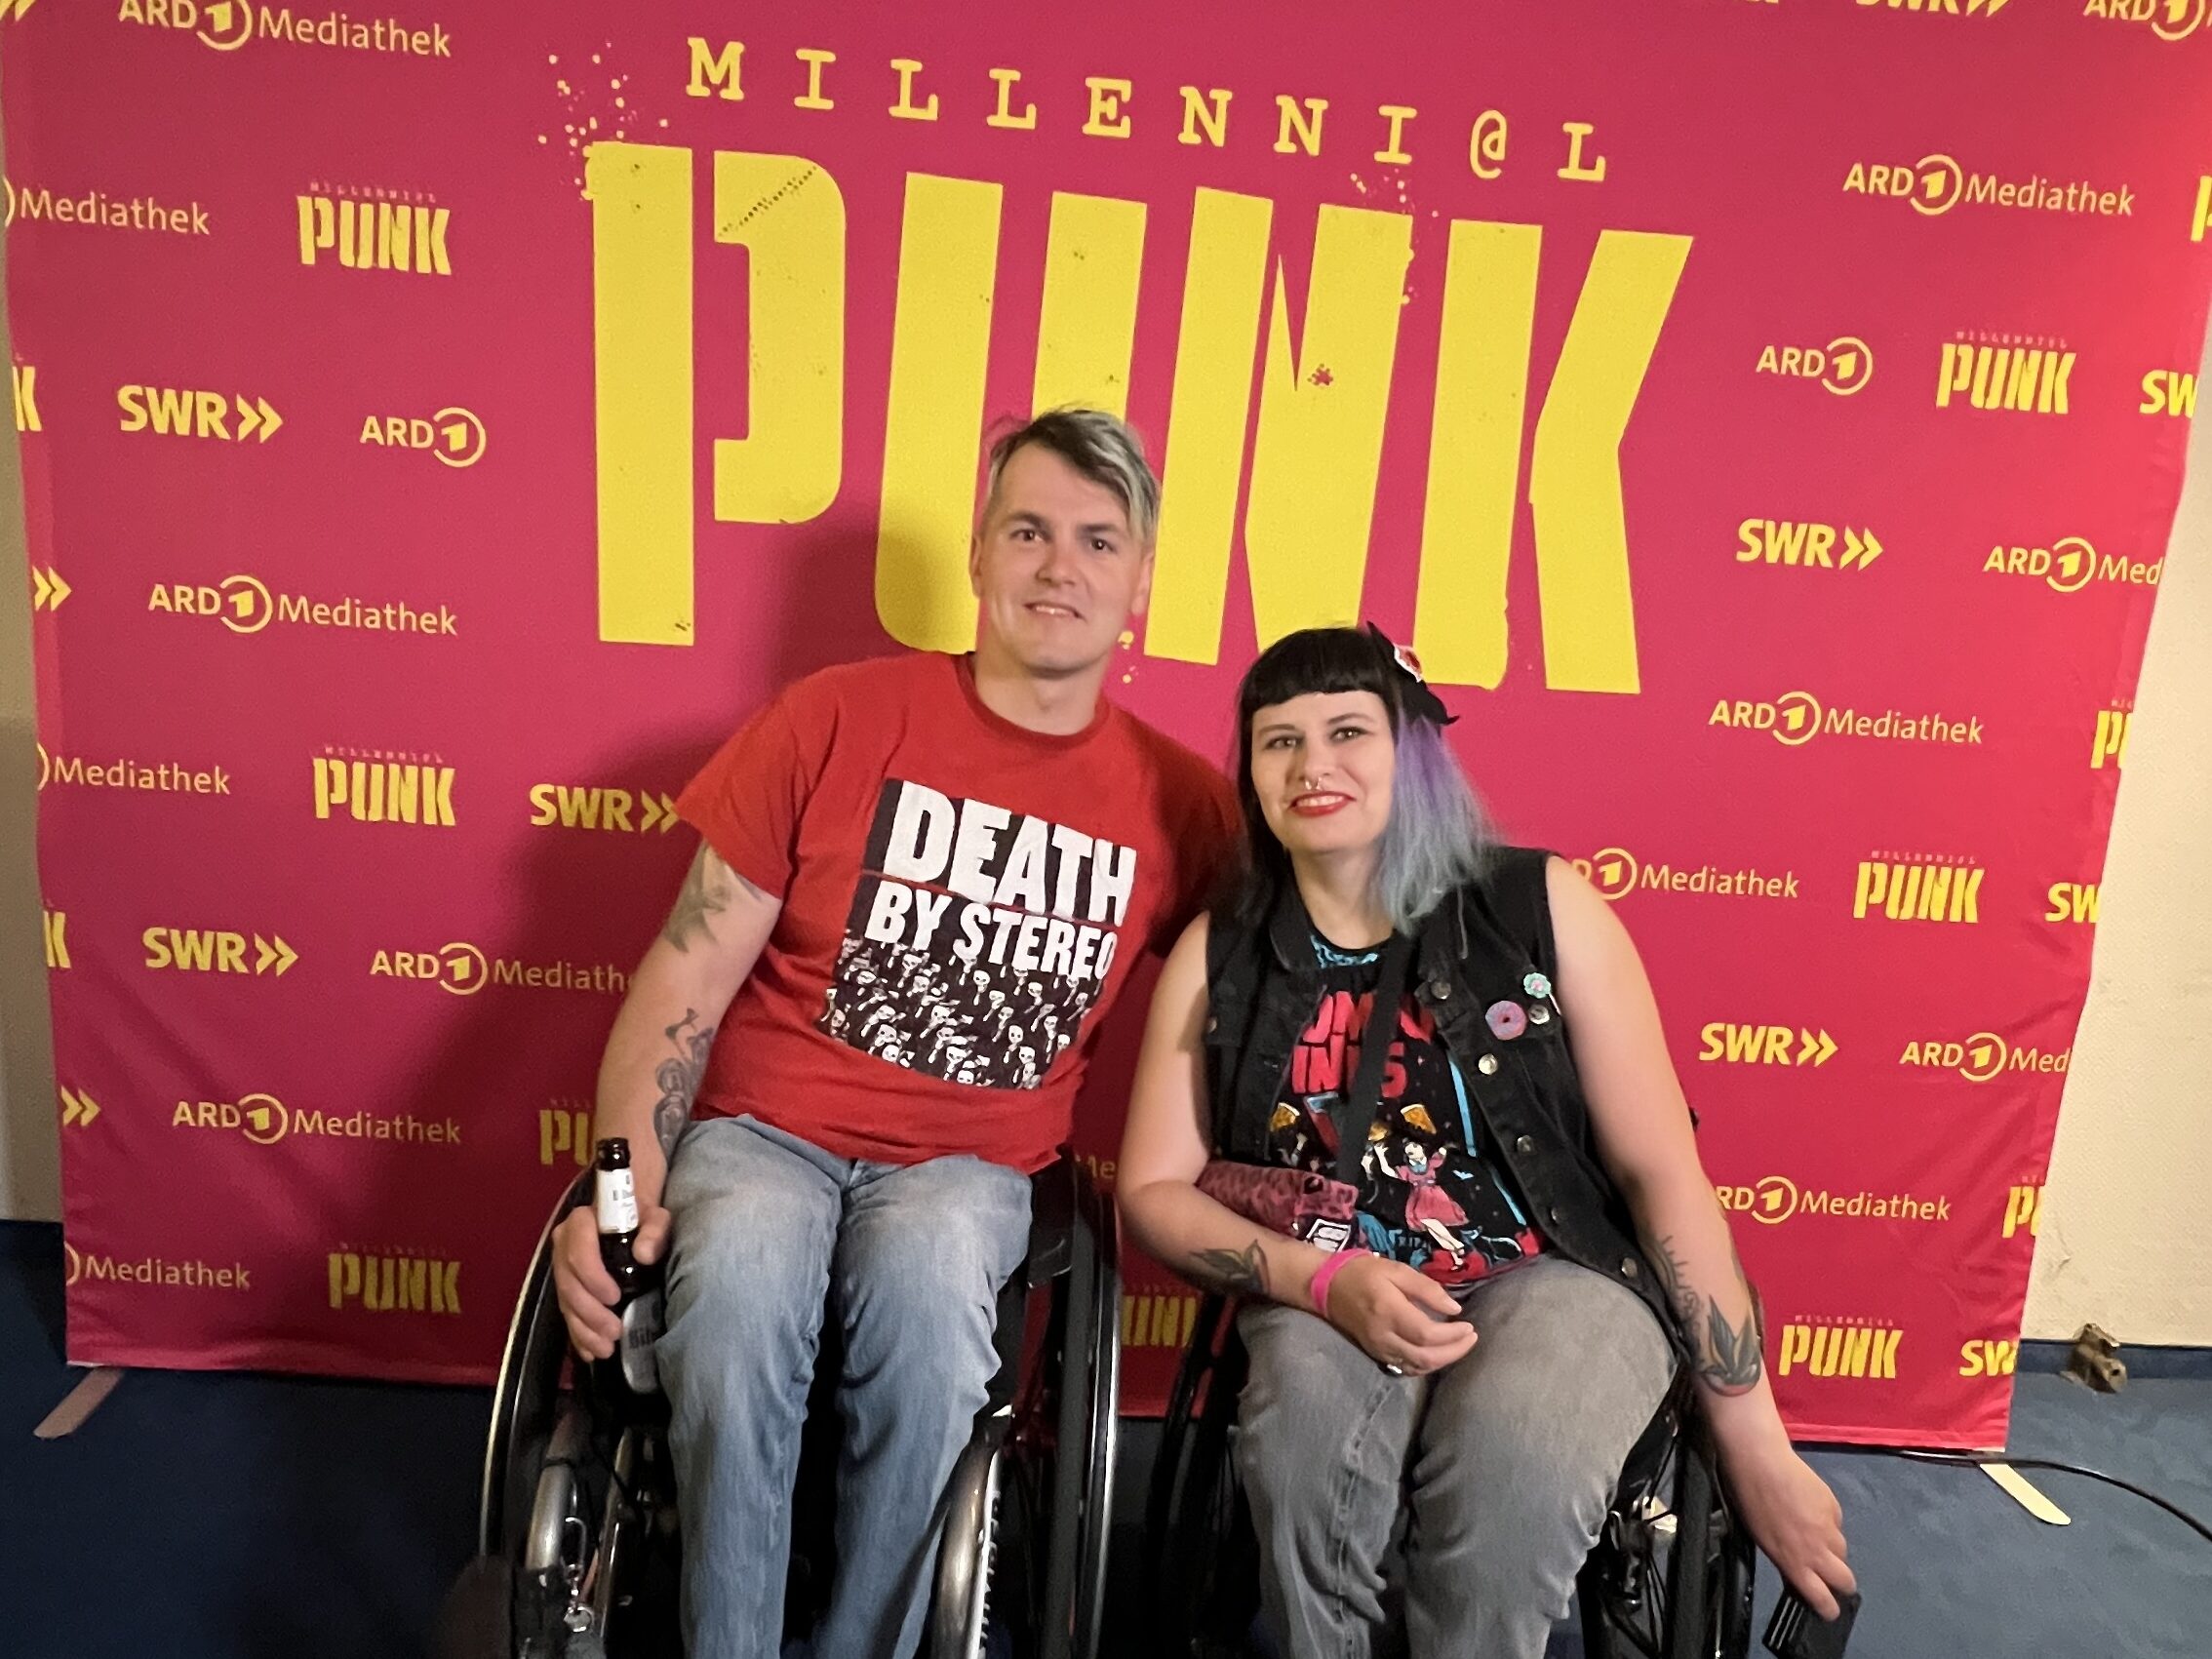 David und Lisa stehen gemeinsam vor einer pinken Fotowand auf der mit gelber Schrift Millennial Punk steht und Logos von ARD und SWR zu sehen sind.